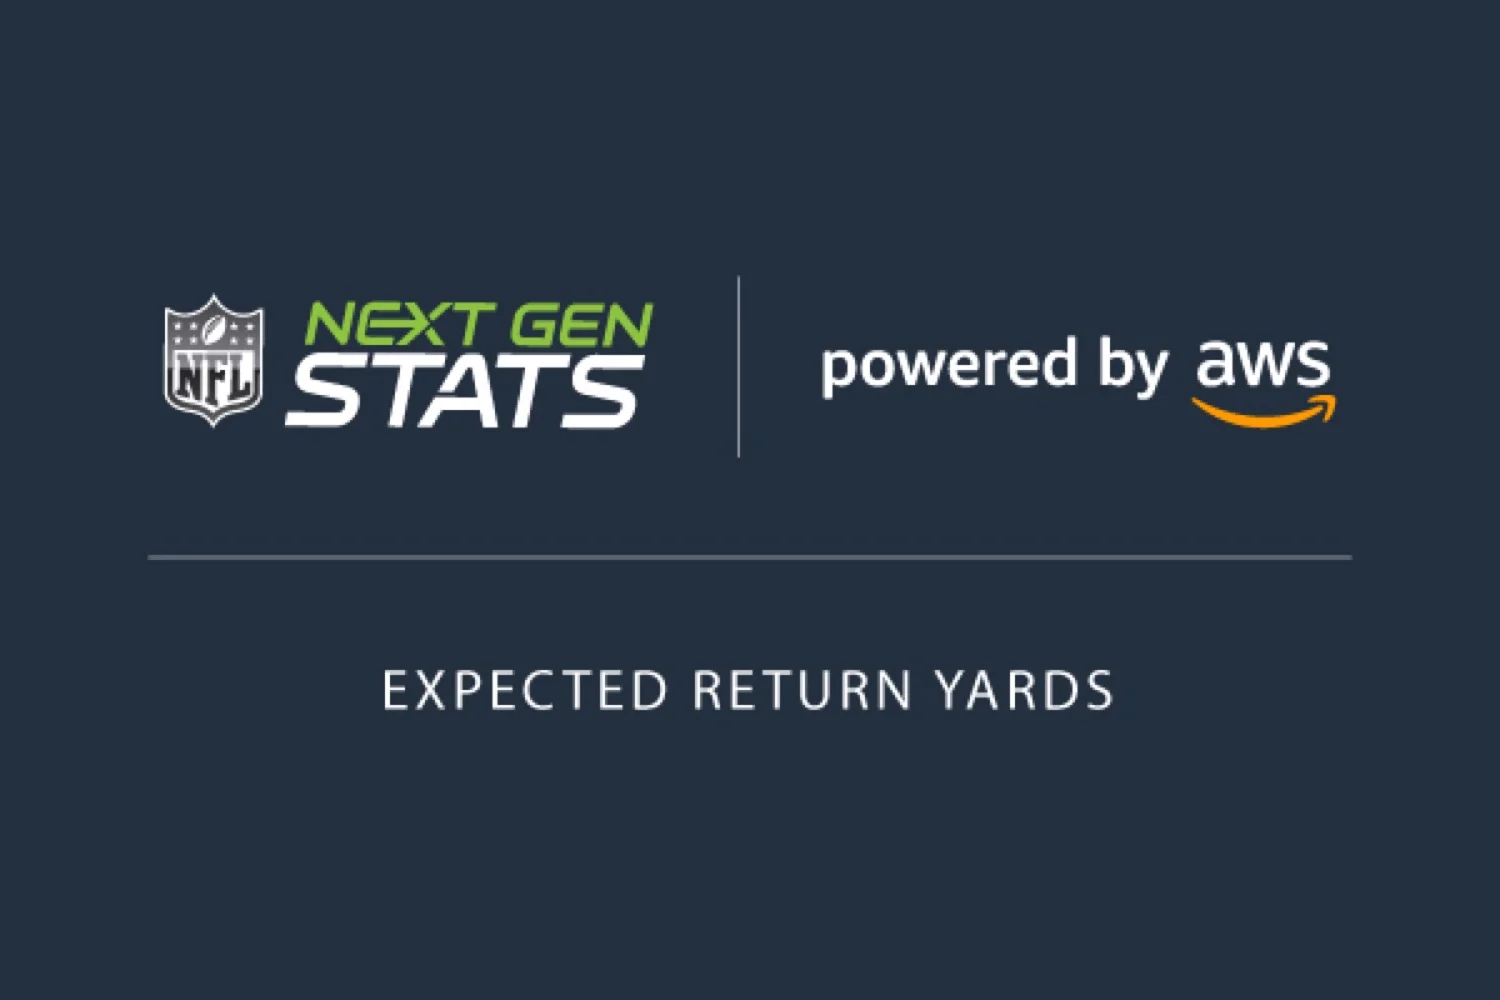 Expected Return Yards: El lanzamiento de AWS y NFL